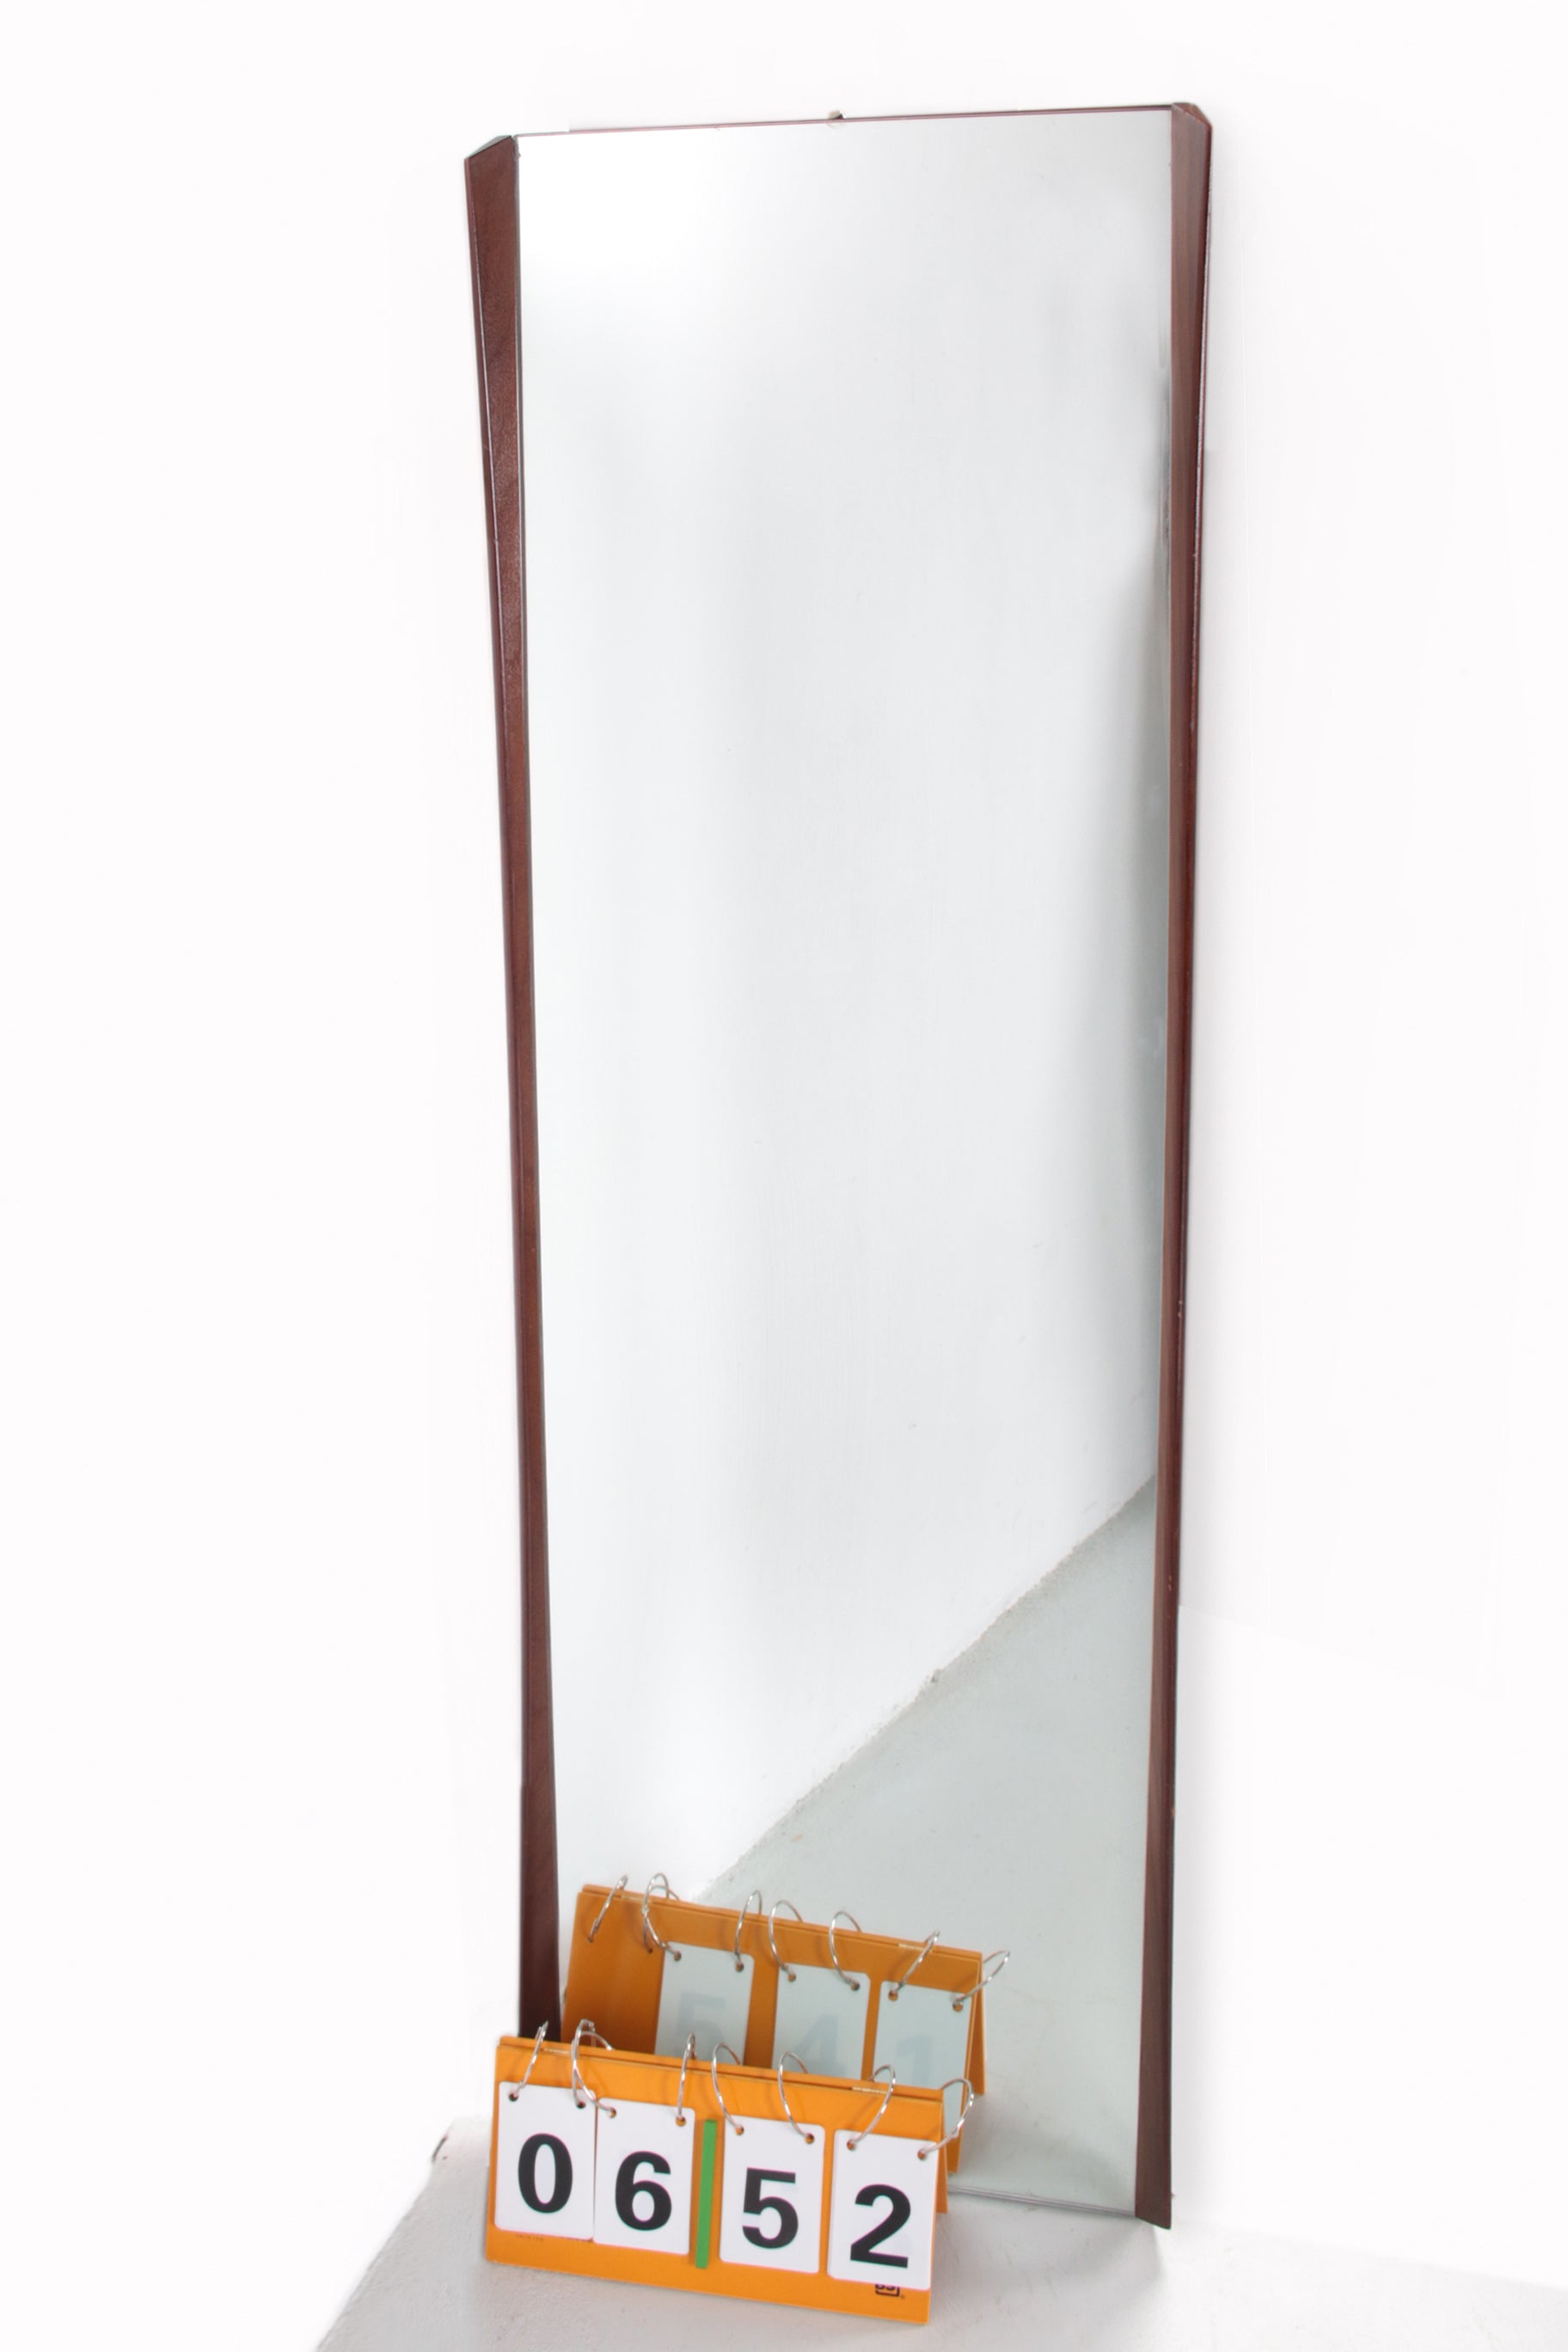 Grote Deense vintage spiegel met teakhouten rand voorkant